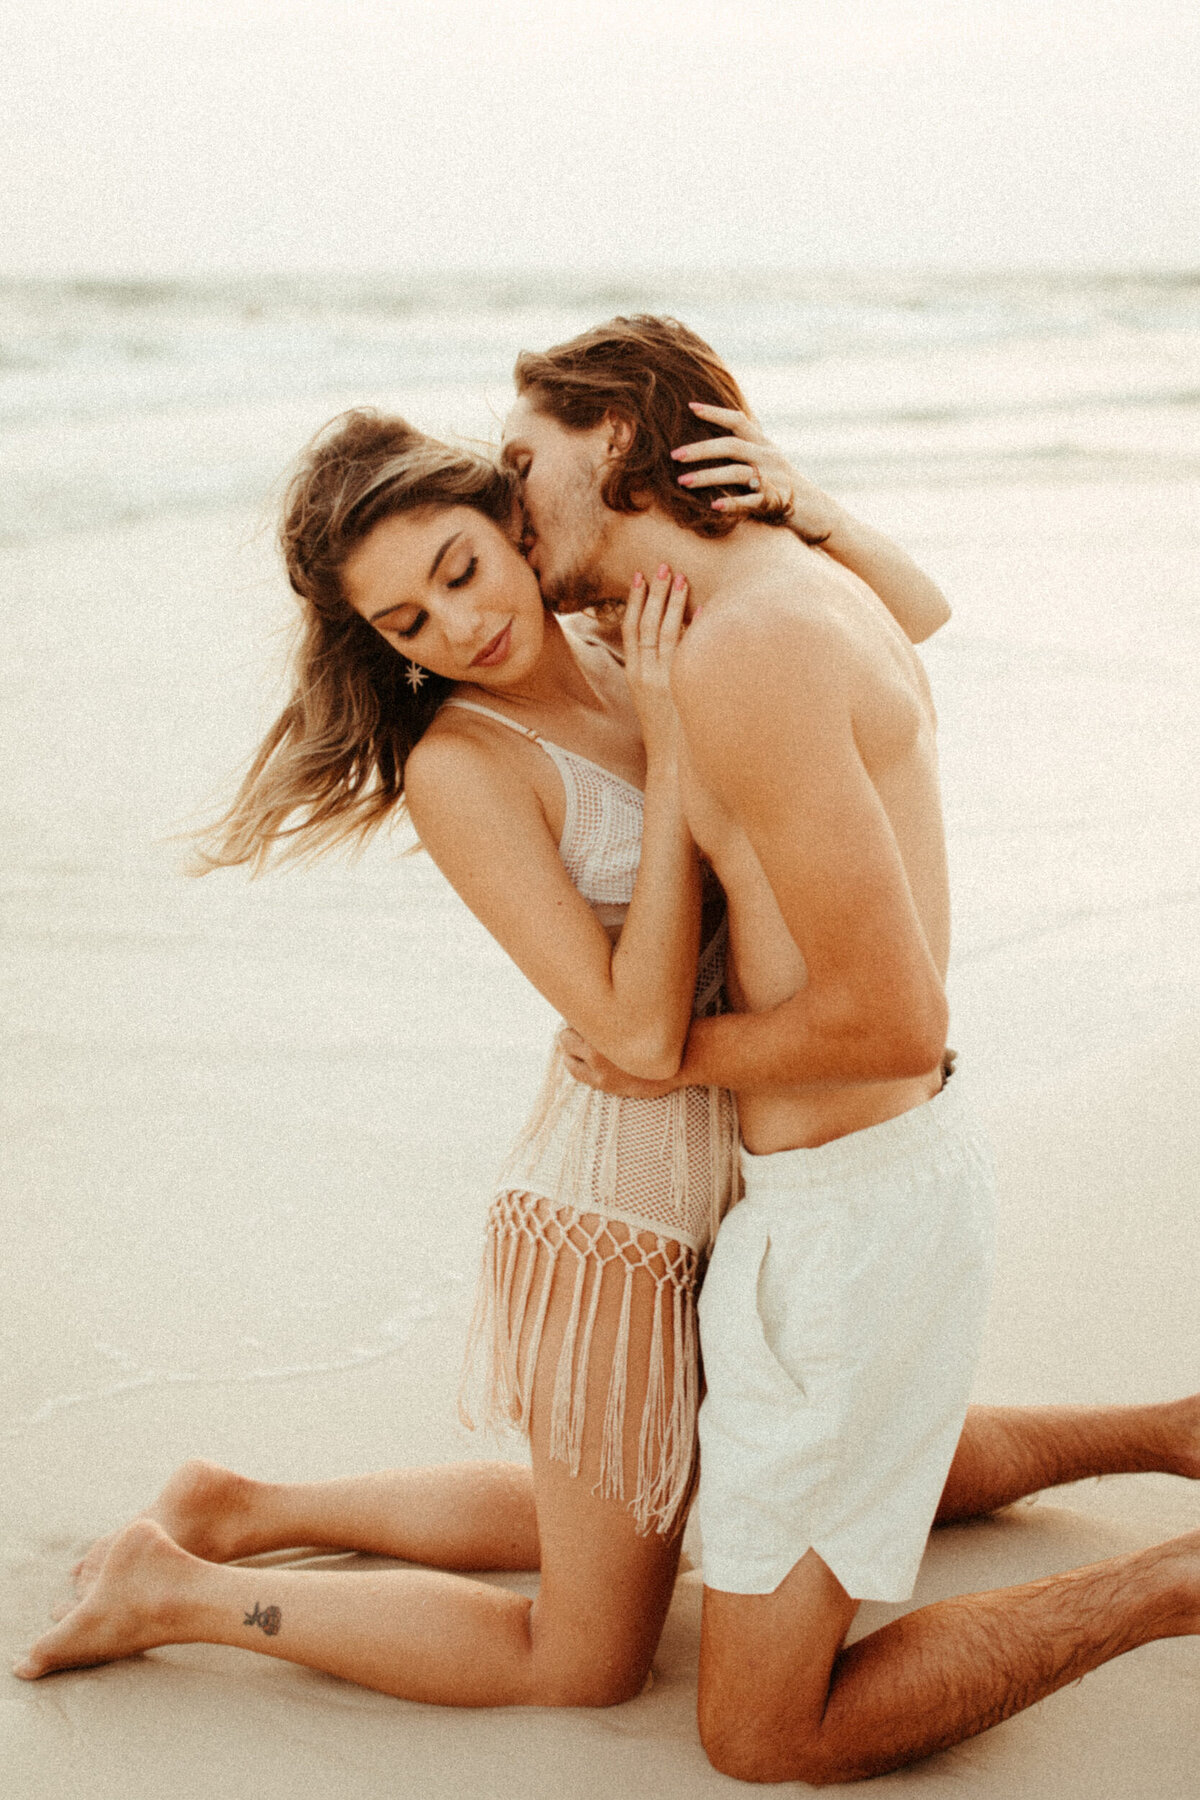 30A-florida-beach-sunset-couples-photoshoot-engagement-session-fringe-swimsuits-11